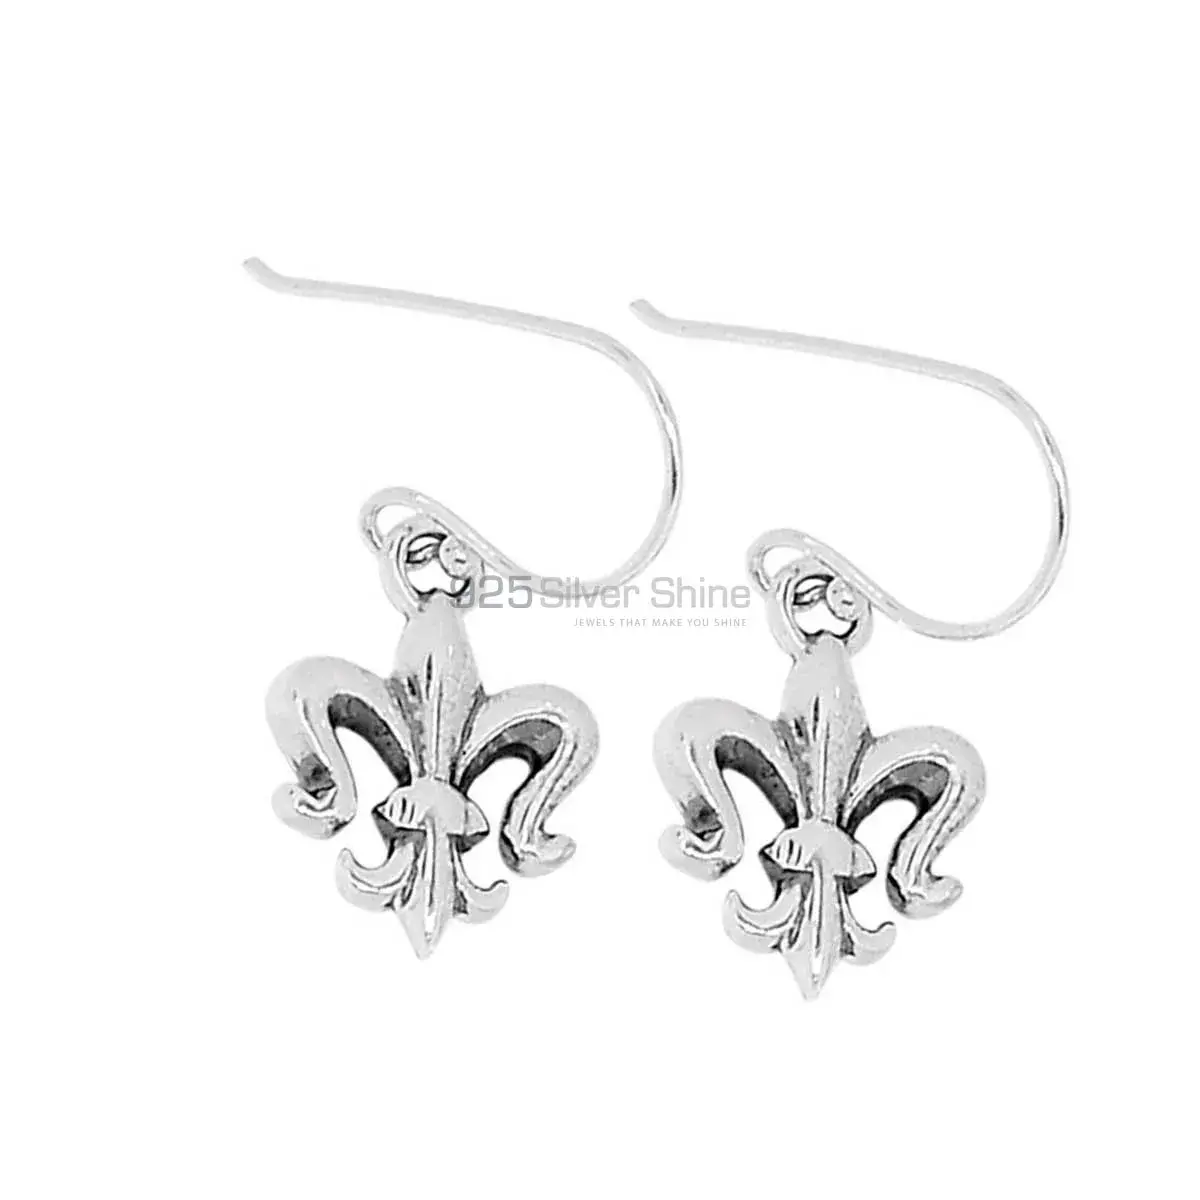 Beautiful 925 Sterling Silver Handmade Earrings Jewelry 925SE2869_2